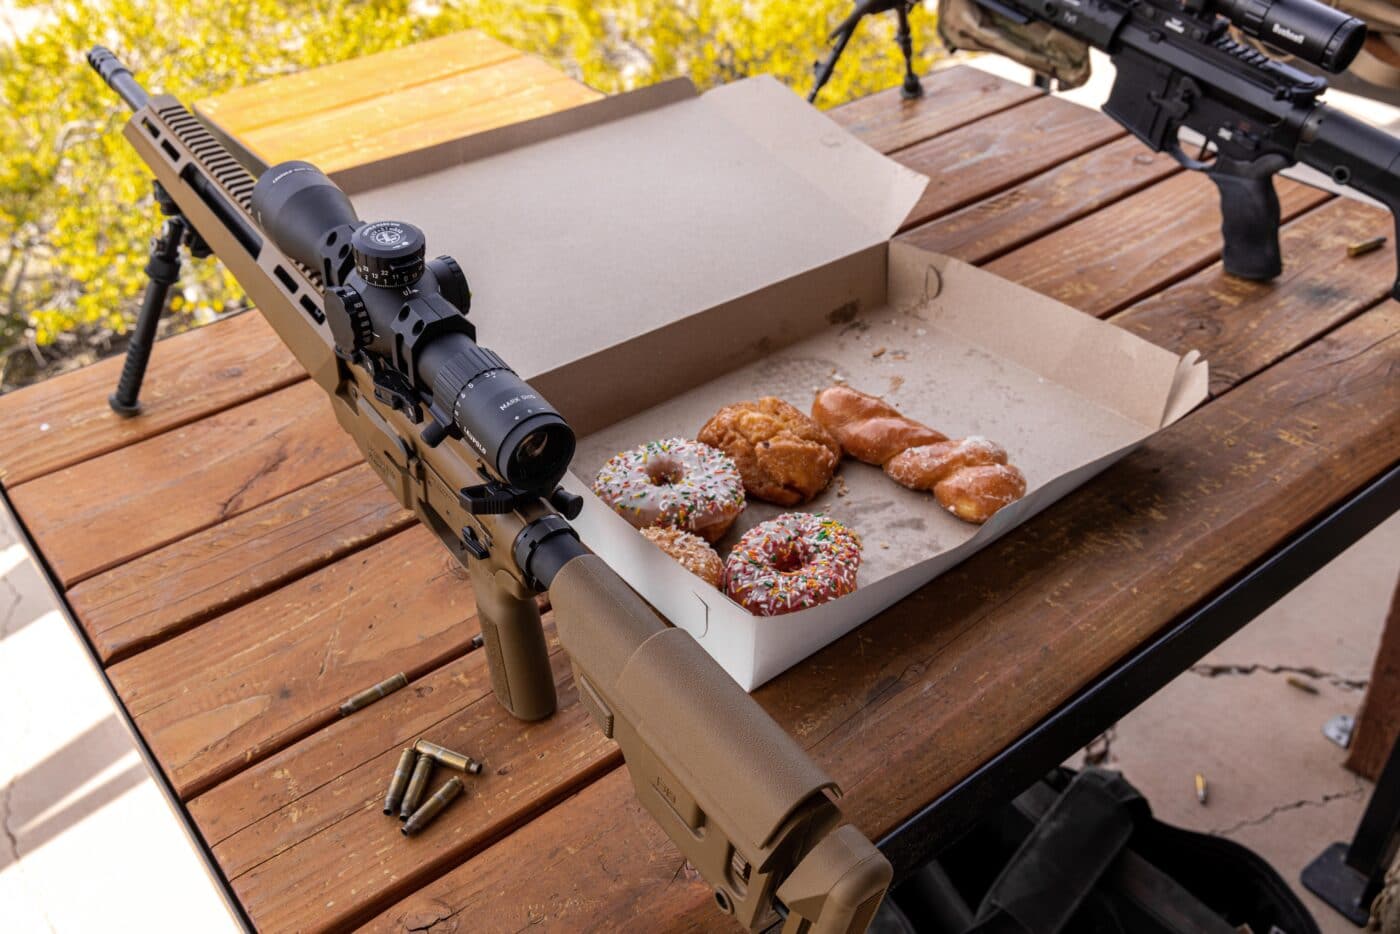 Donuts next to rifles at a shooting range